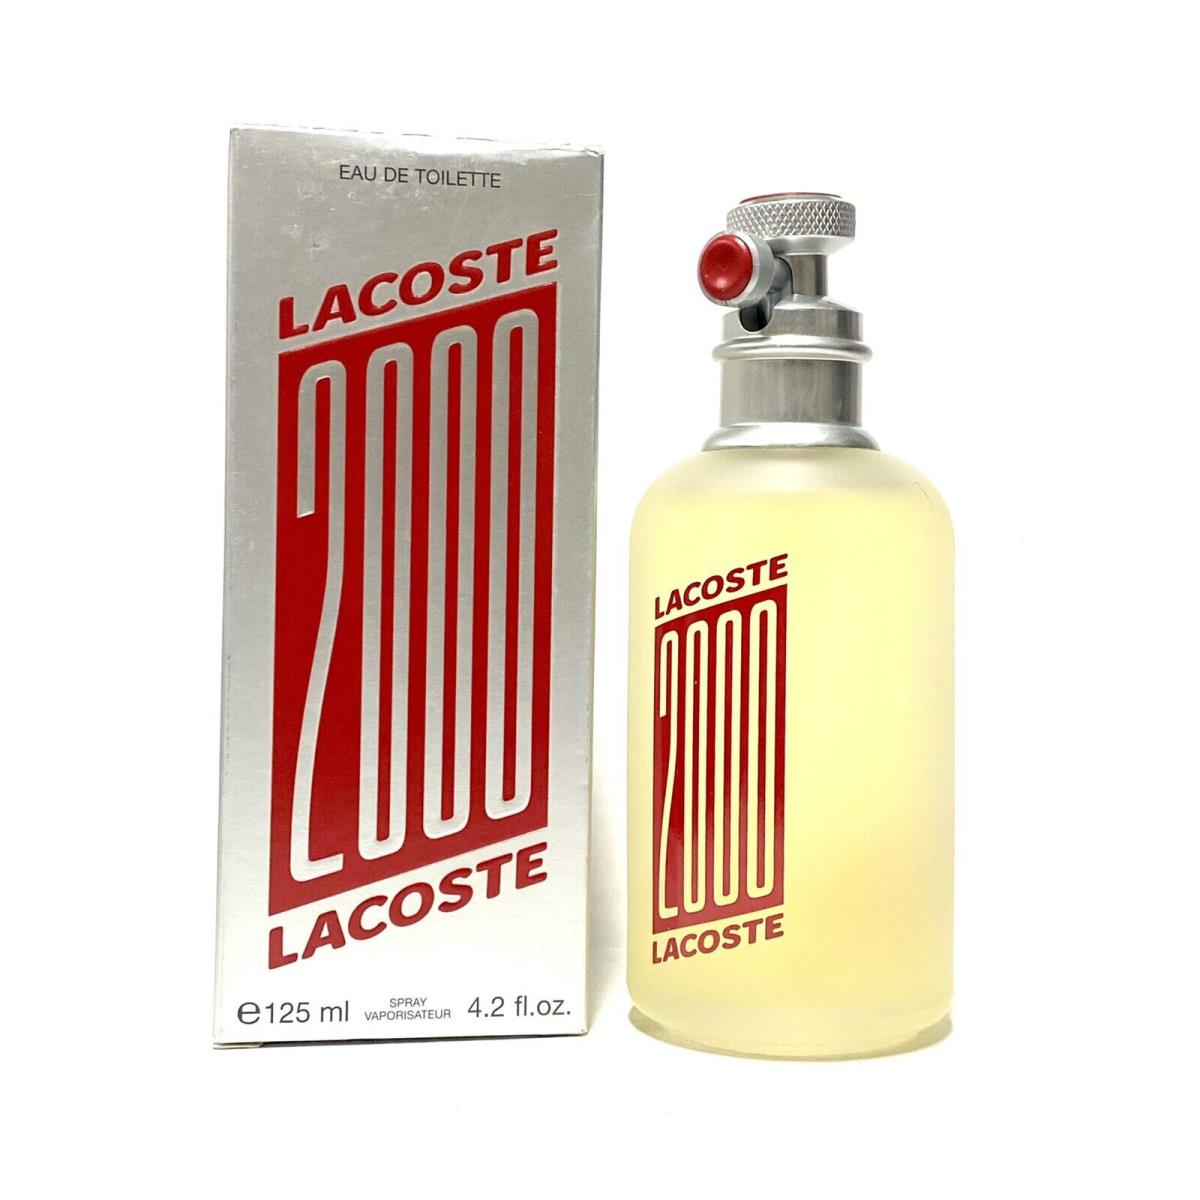 Lacoste 2000 Men Cologne 4.2oz-125-ml Edt Spr Rare BB33